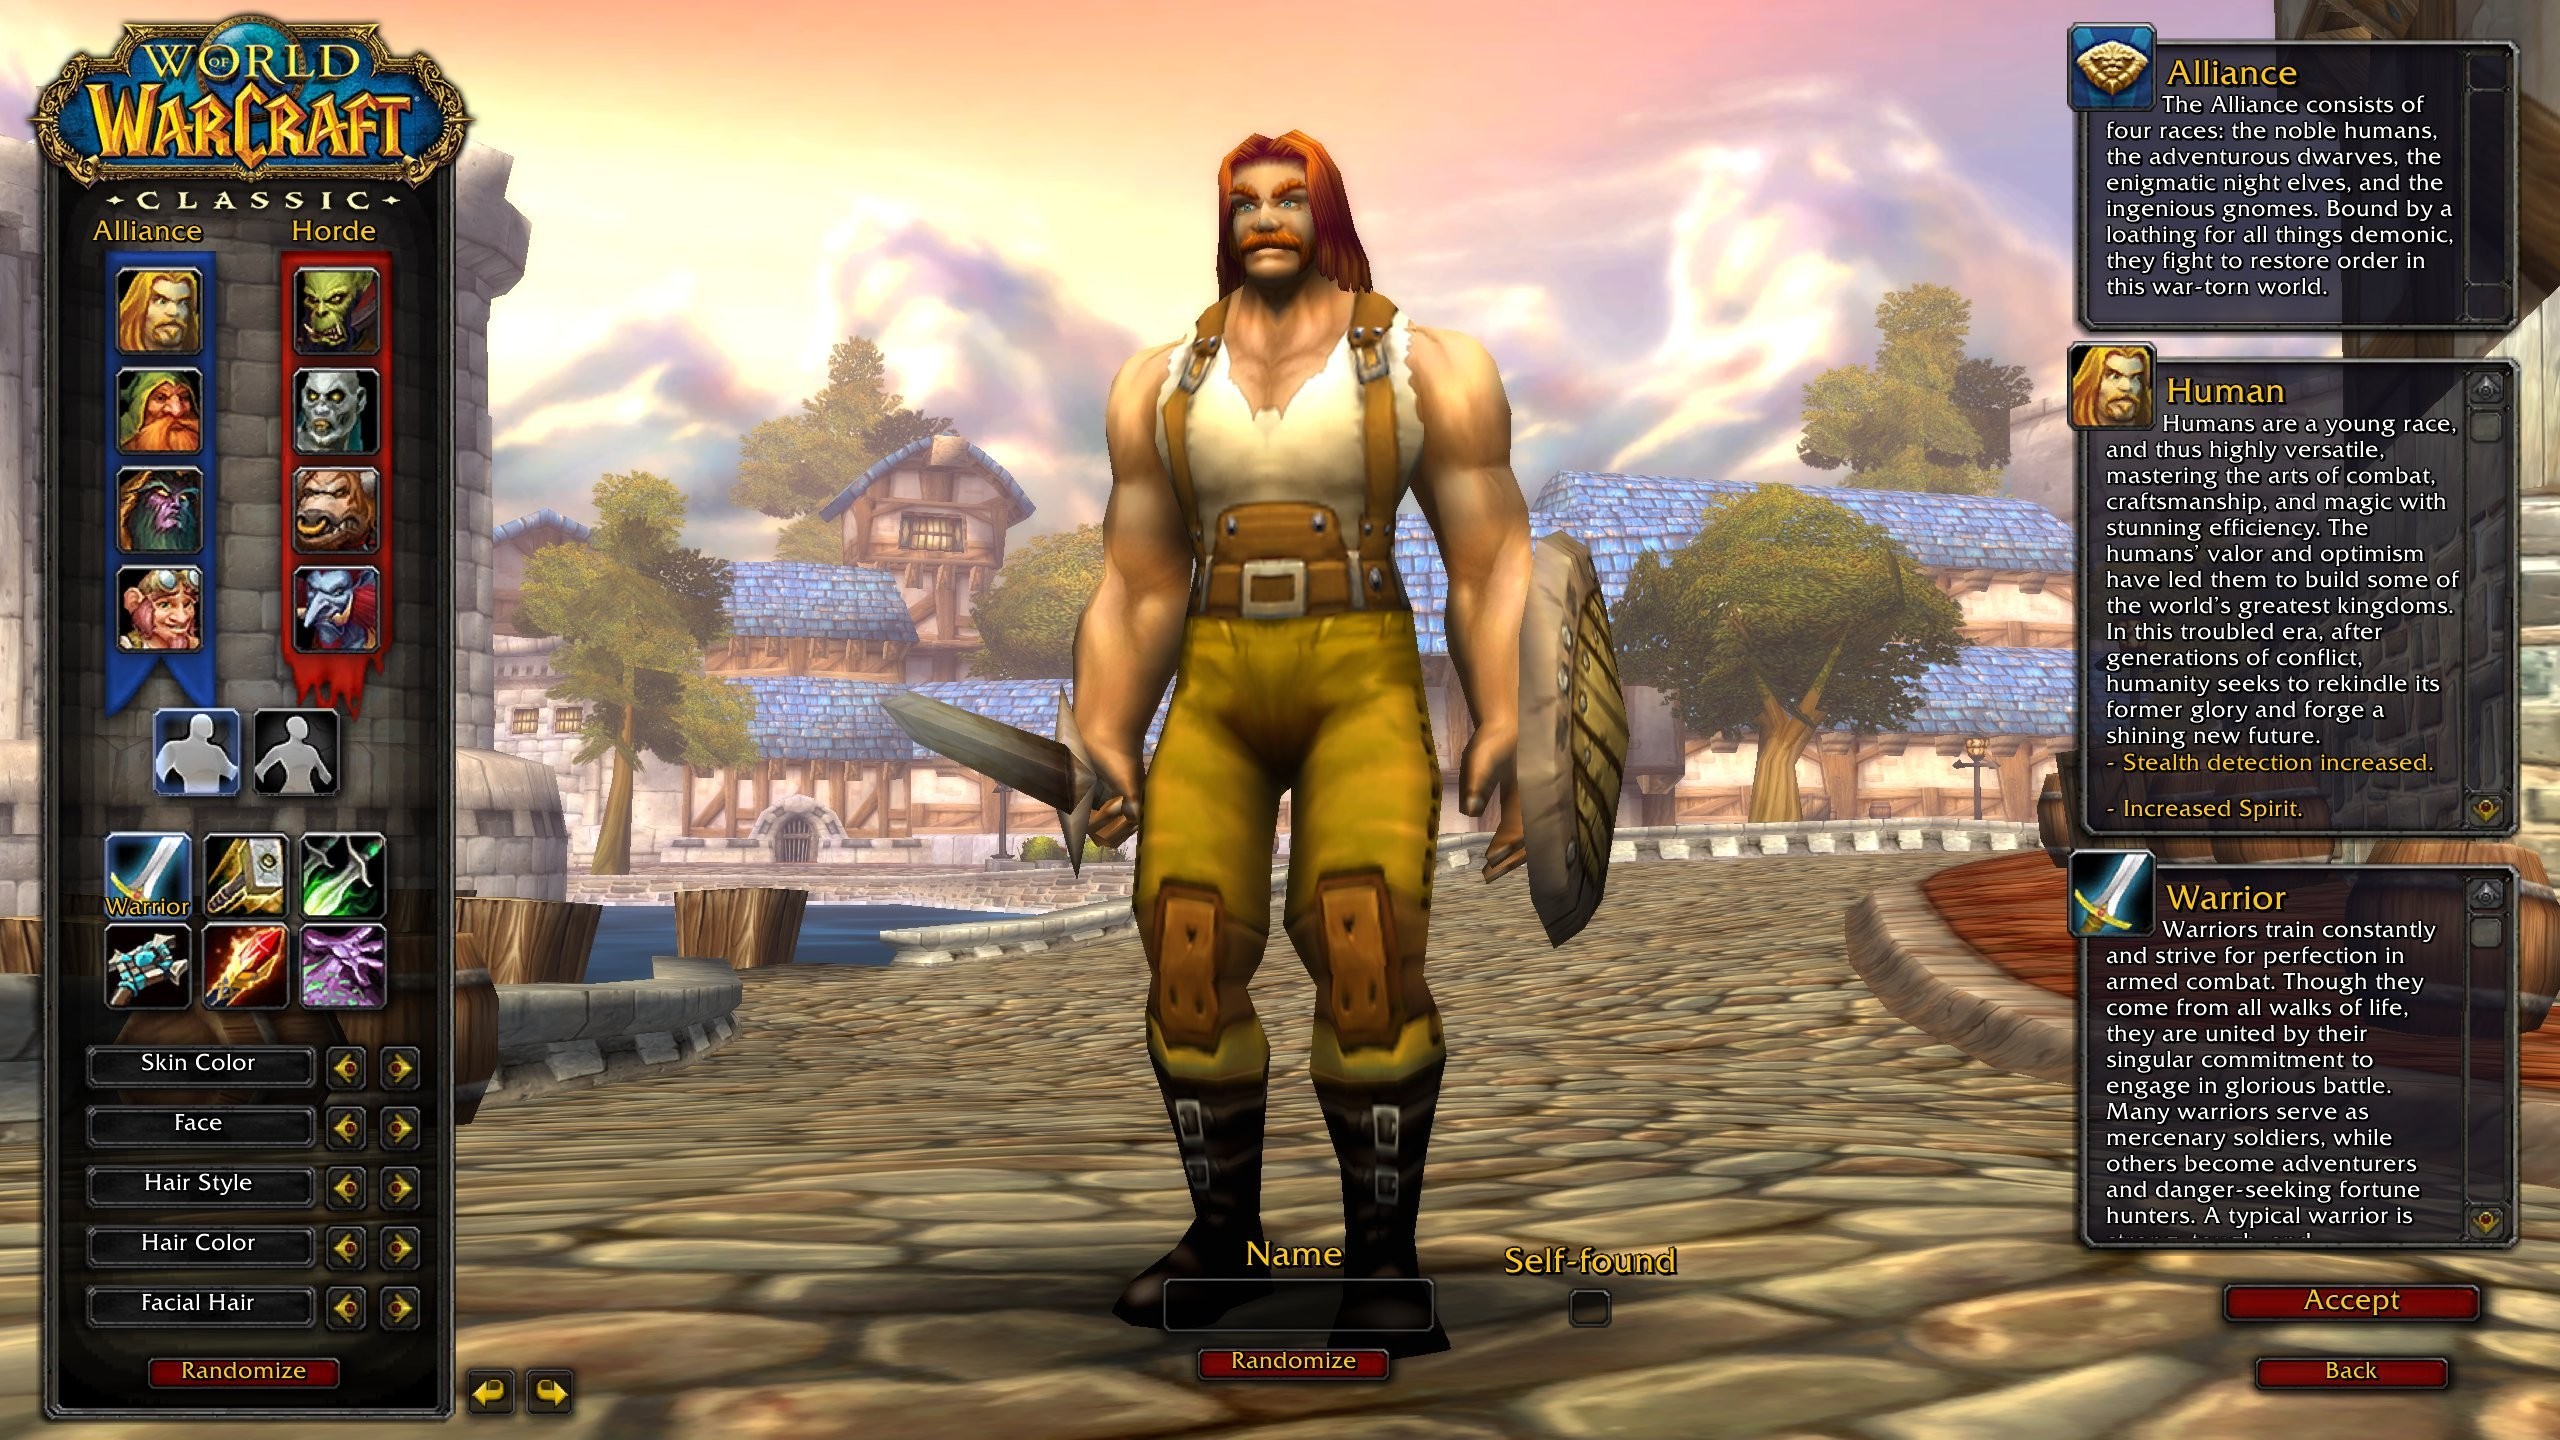 World of Warcraft Self-Found, czyli solowy WoW startuje 29 lutego